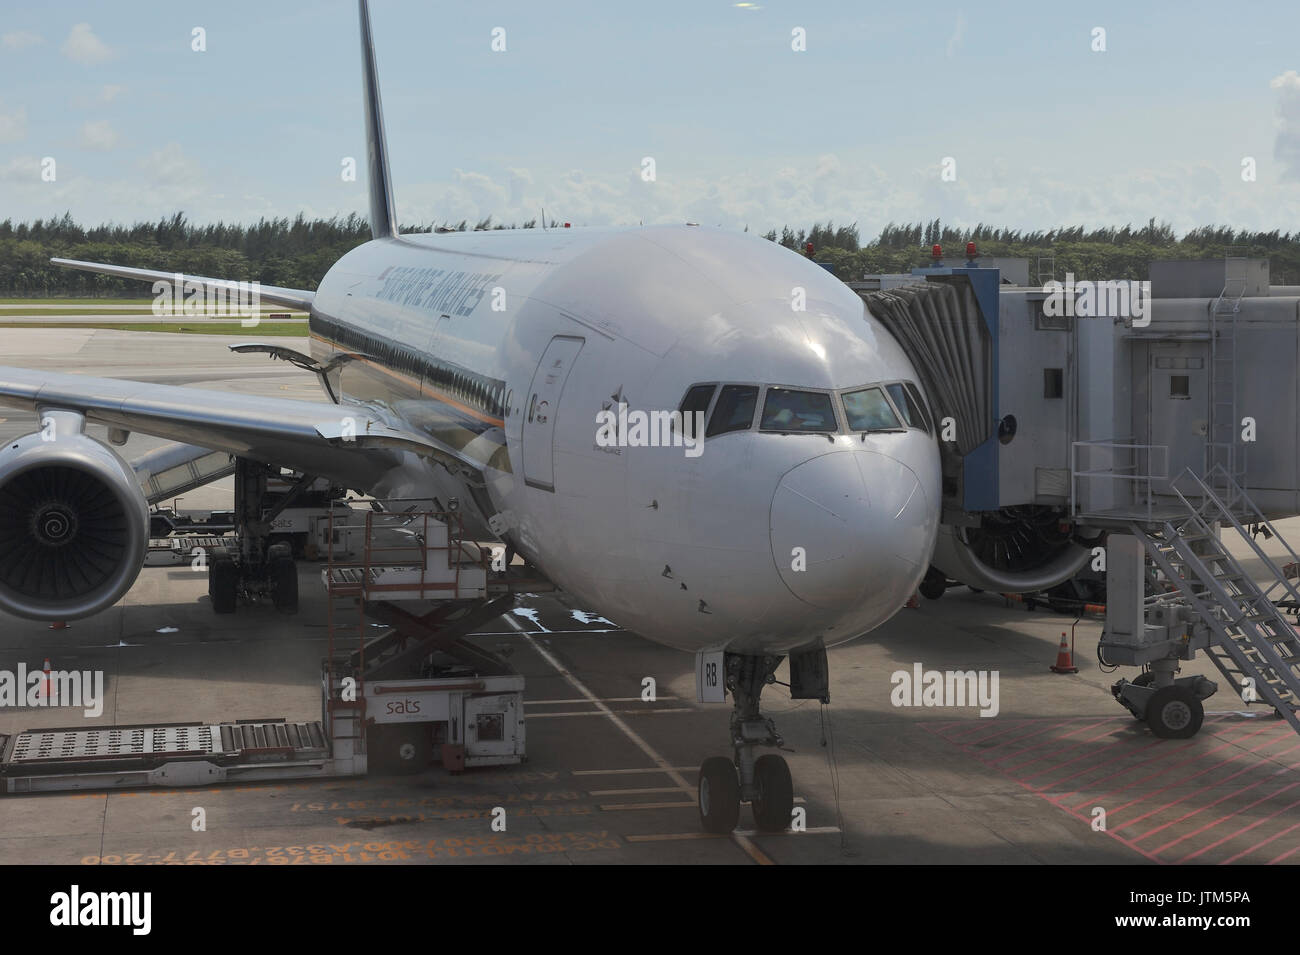 Singapur Airline 747 mit Jet Bridge verbunden Warten auf boarding Passagiere am Internationalen Flughafen von Sydney. New South Wales. Australien Stockfoto